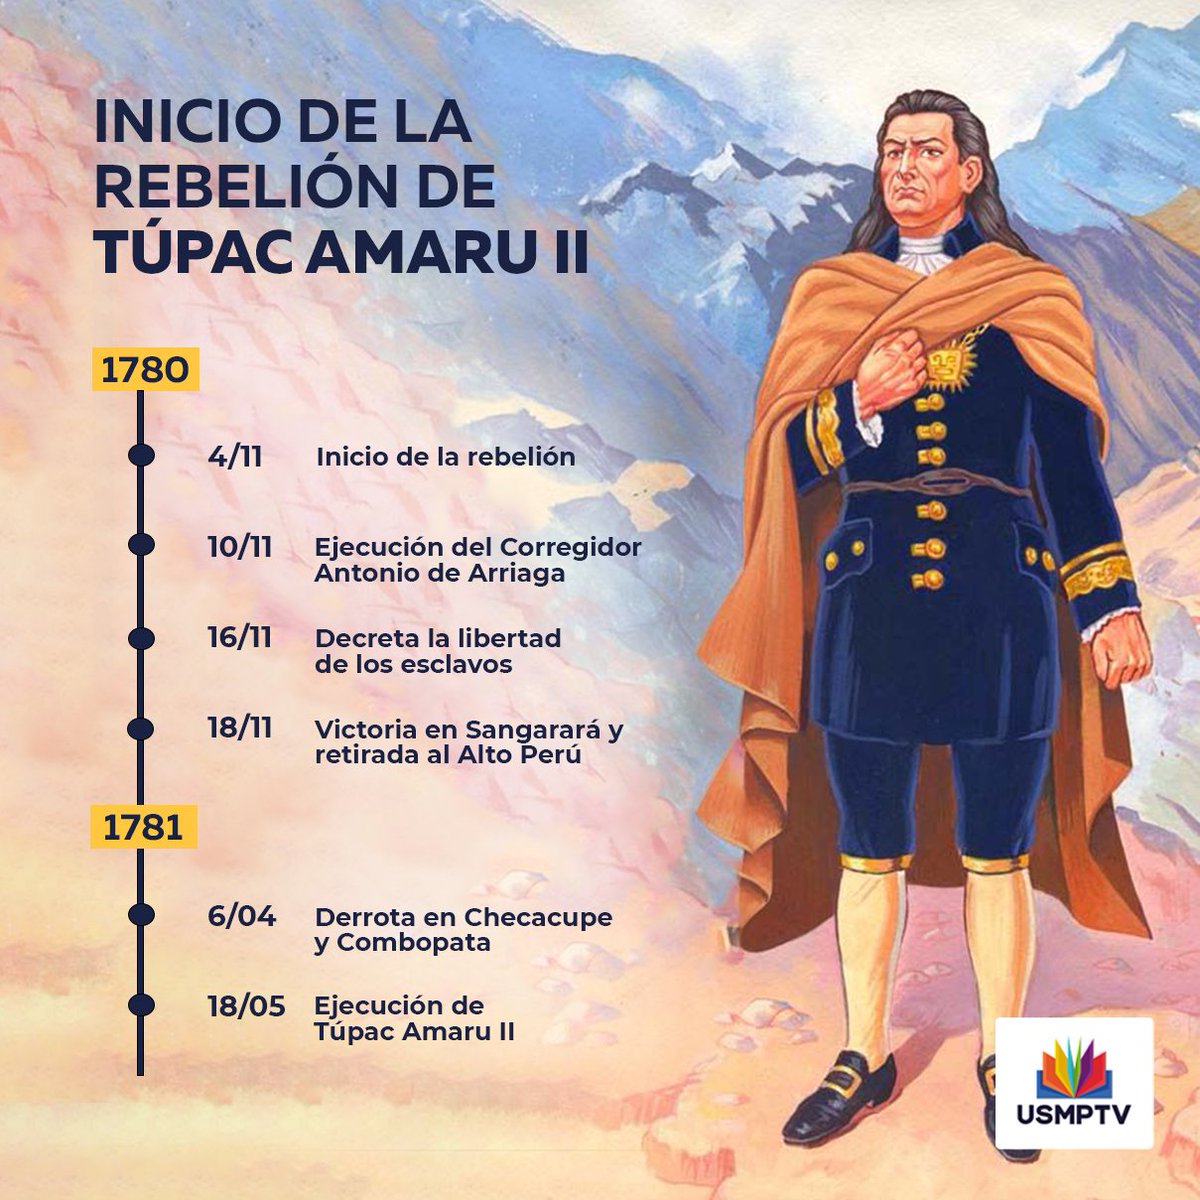 USMPTV al Twitter: "Hoy se conmemoran 240 años del inicio de la rebelión indígena de los andes peruanos, liderado por José Gabriel Condorcanqui Noguera, Túpac Amaru II. Es considerada como la mayor